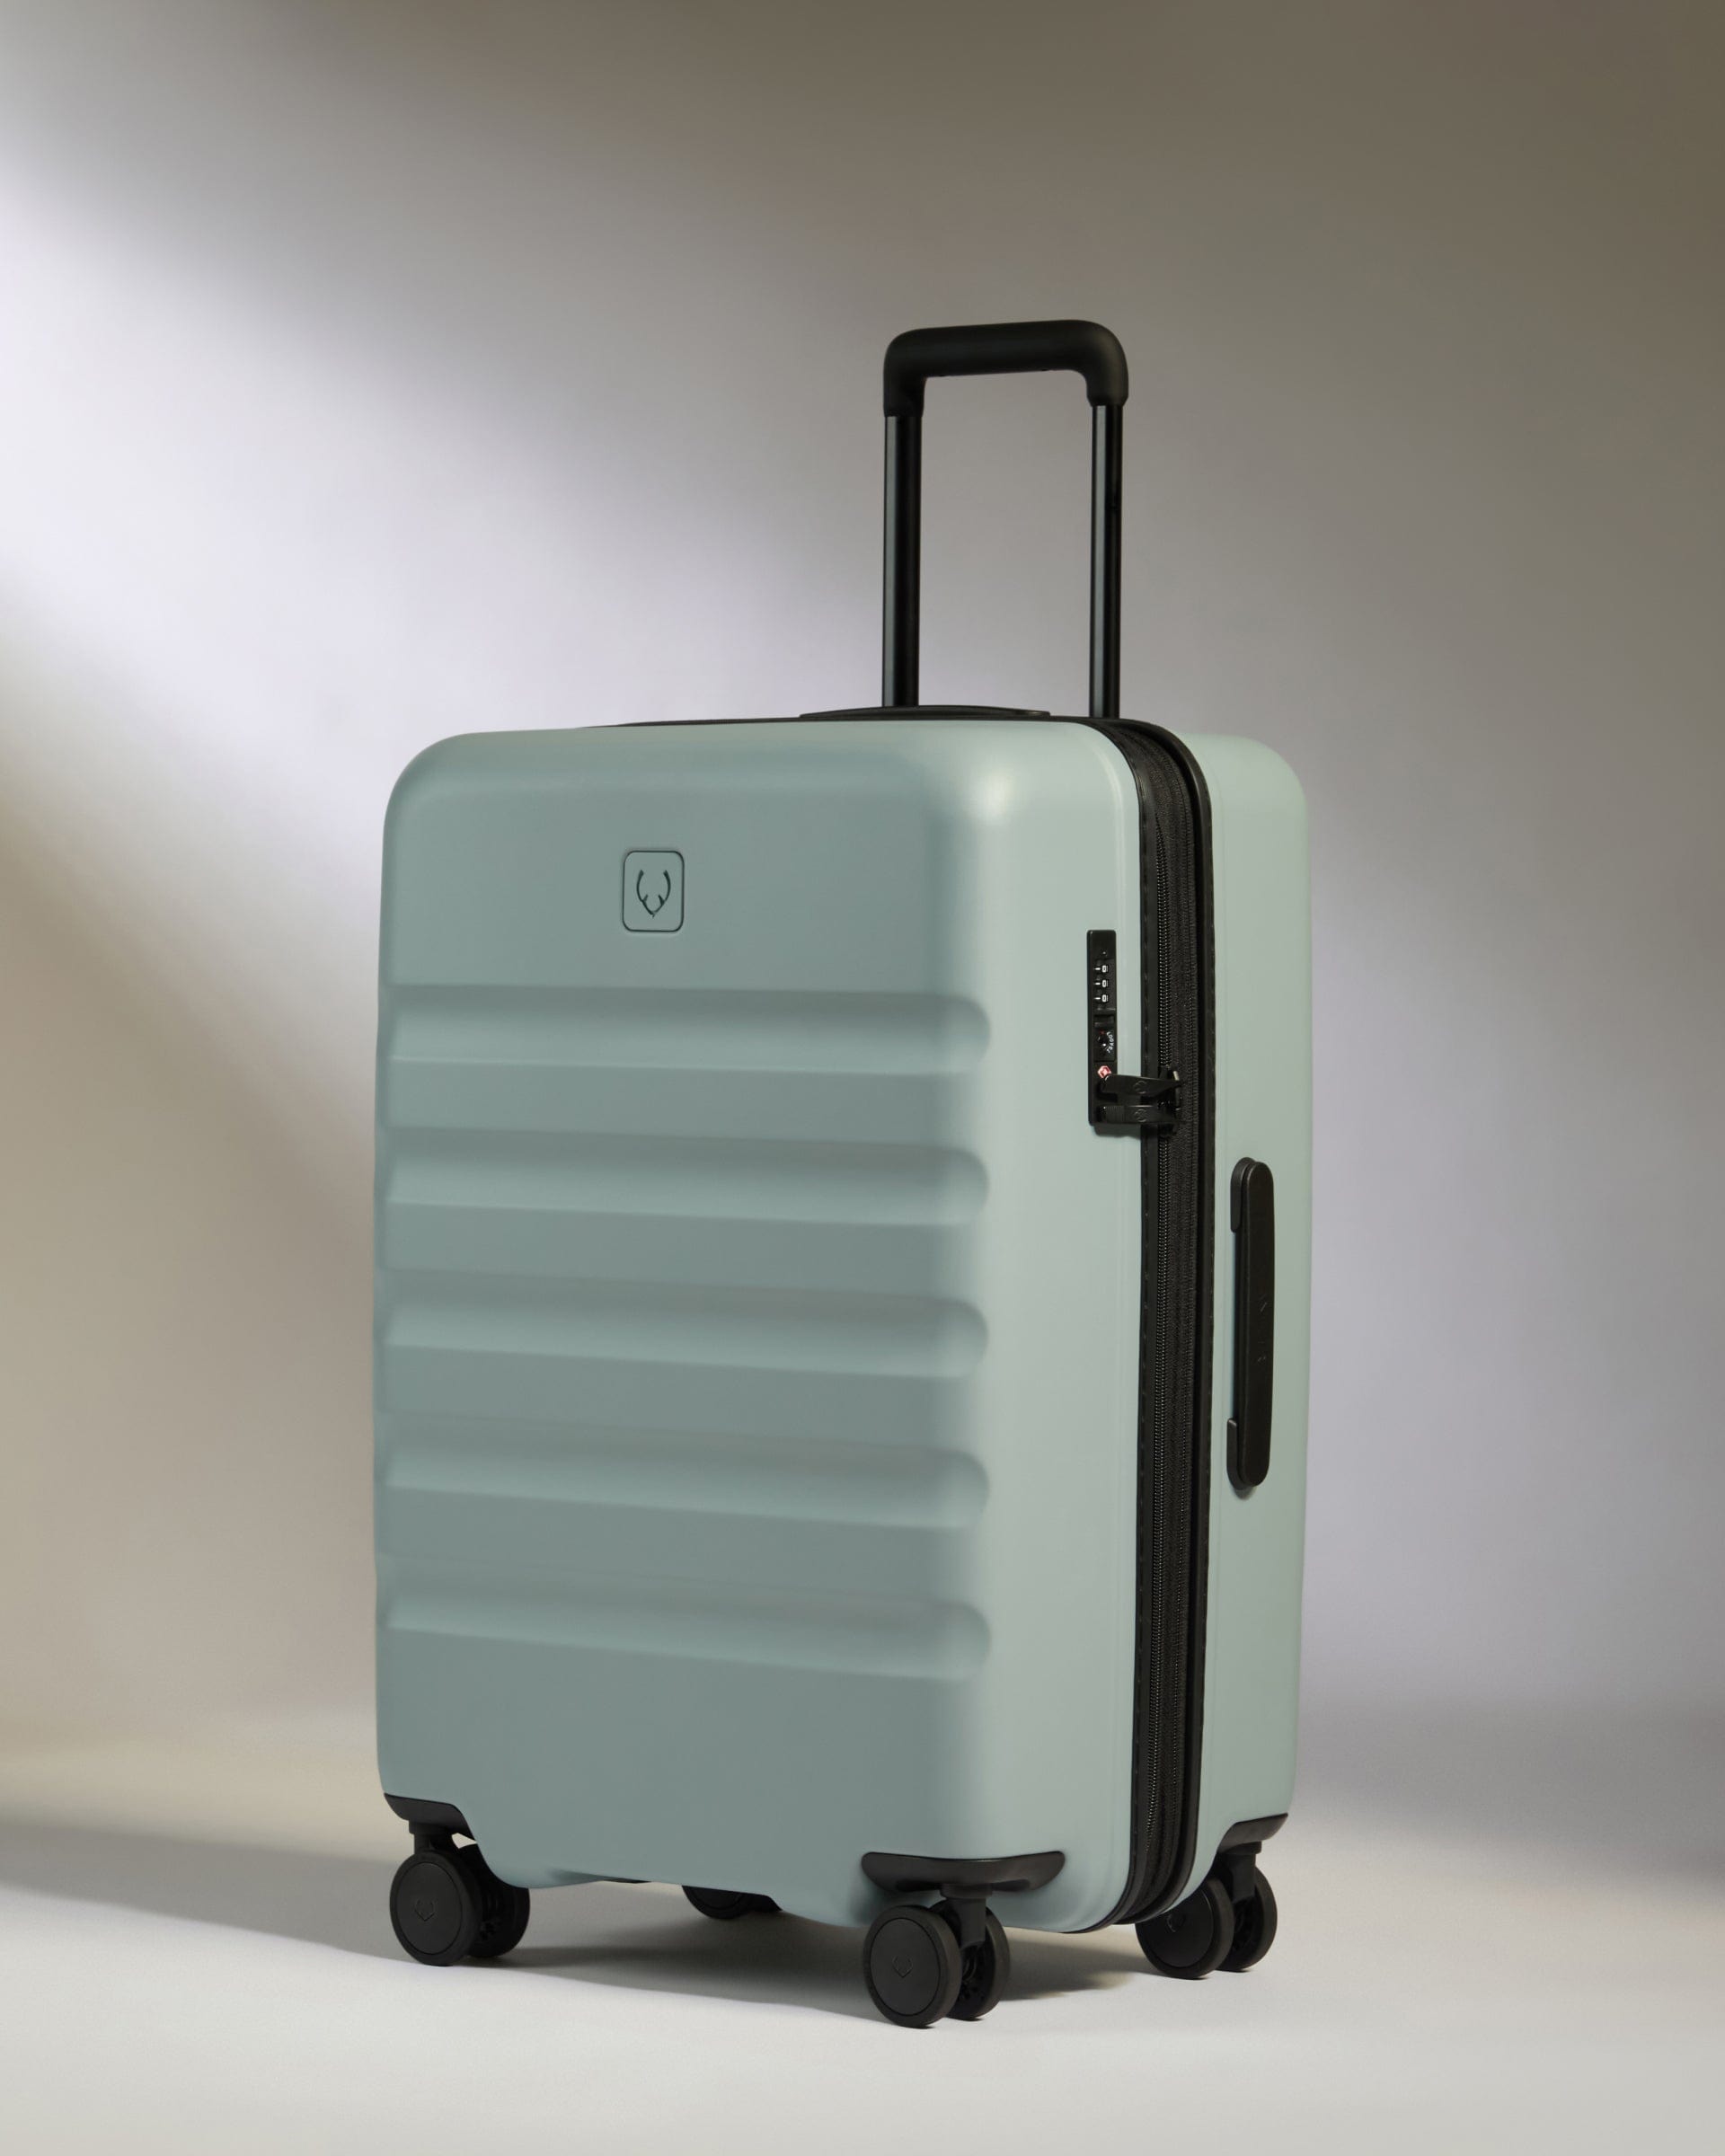 View Antler Icon Stripe Medium Suitcase In Mist Blue Size 455cm x 66cm x 30cm information